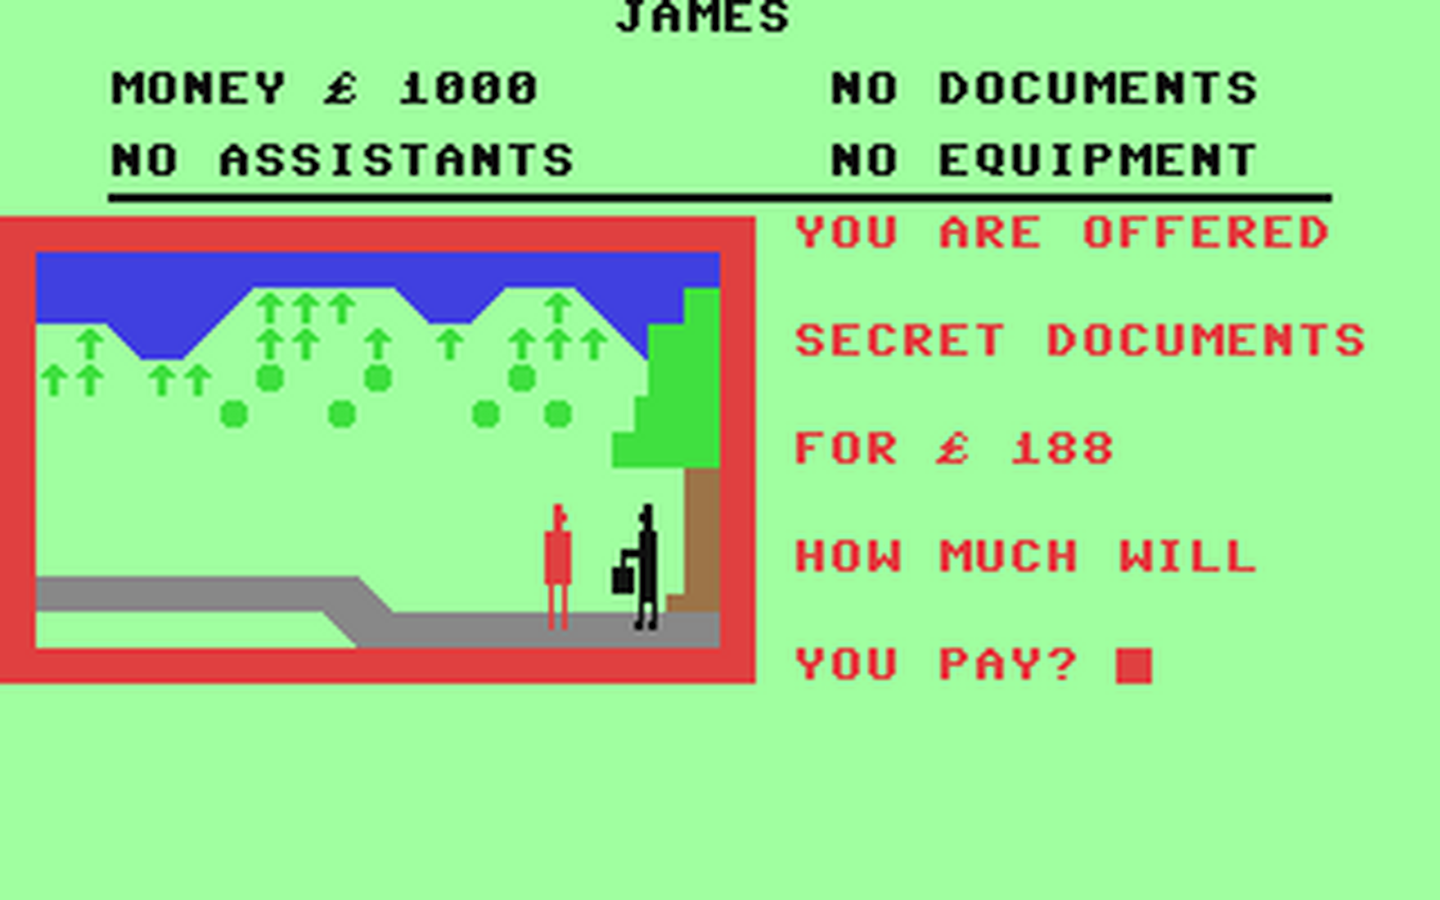 C64 GameBase Red_Alert Mr._Chip_Software 1983